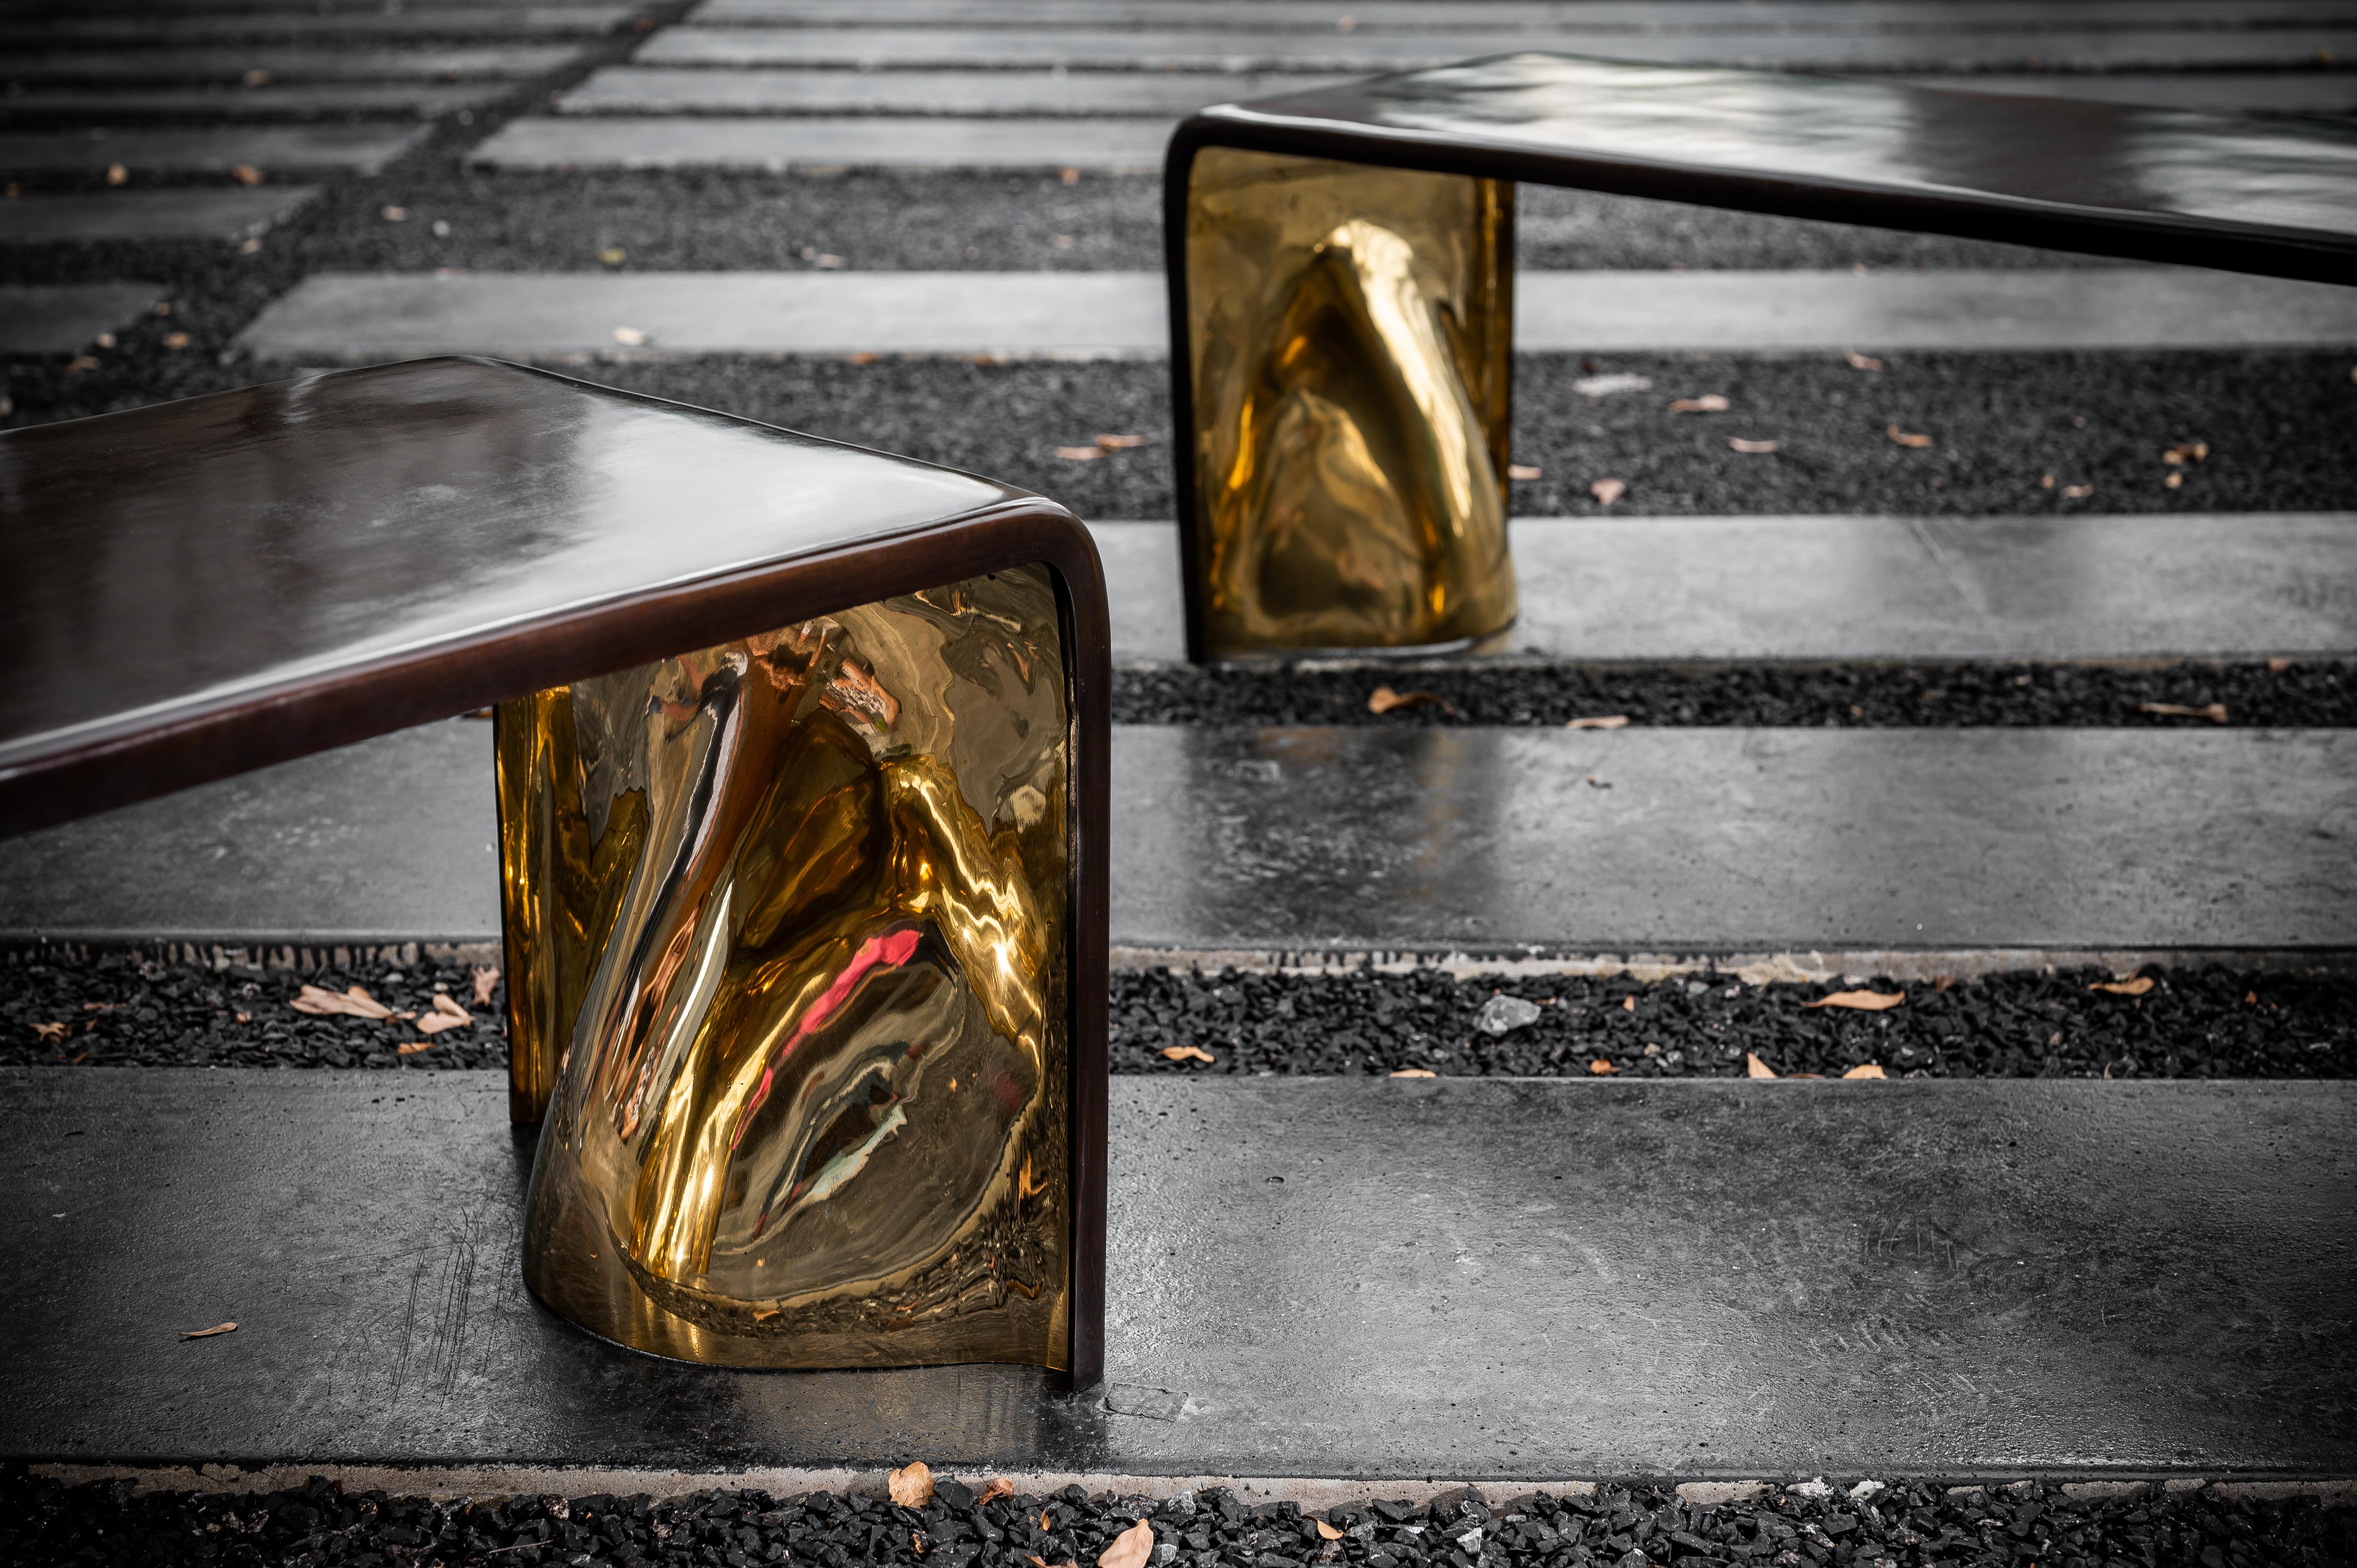 JETZT VERFÜGBAR UND VERSANDFERTIG! 

Die große Khetan-Bank ist eine Bronzeskulptur, die von zeitgenössischen Künstlern wie Constantin Brancusi und Isamu Noguchi inspiriert wurde. Die im Wachsausschmelzverfahren gegossene Bank ist ein Stück in